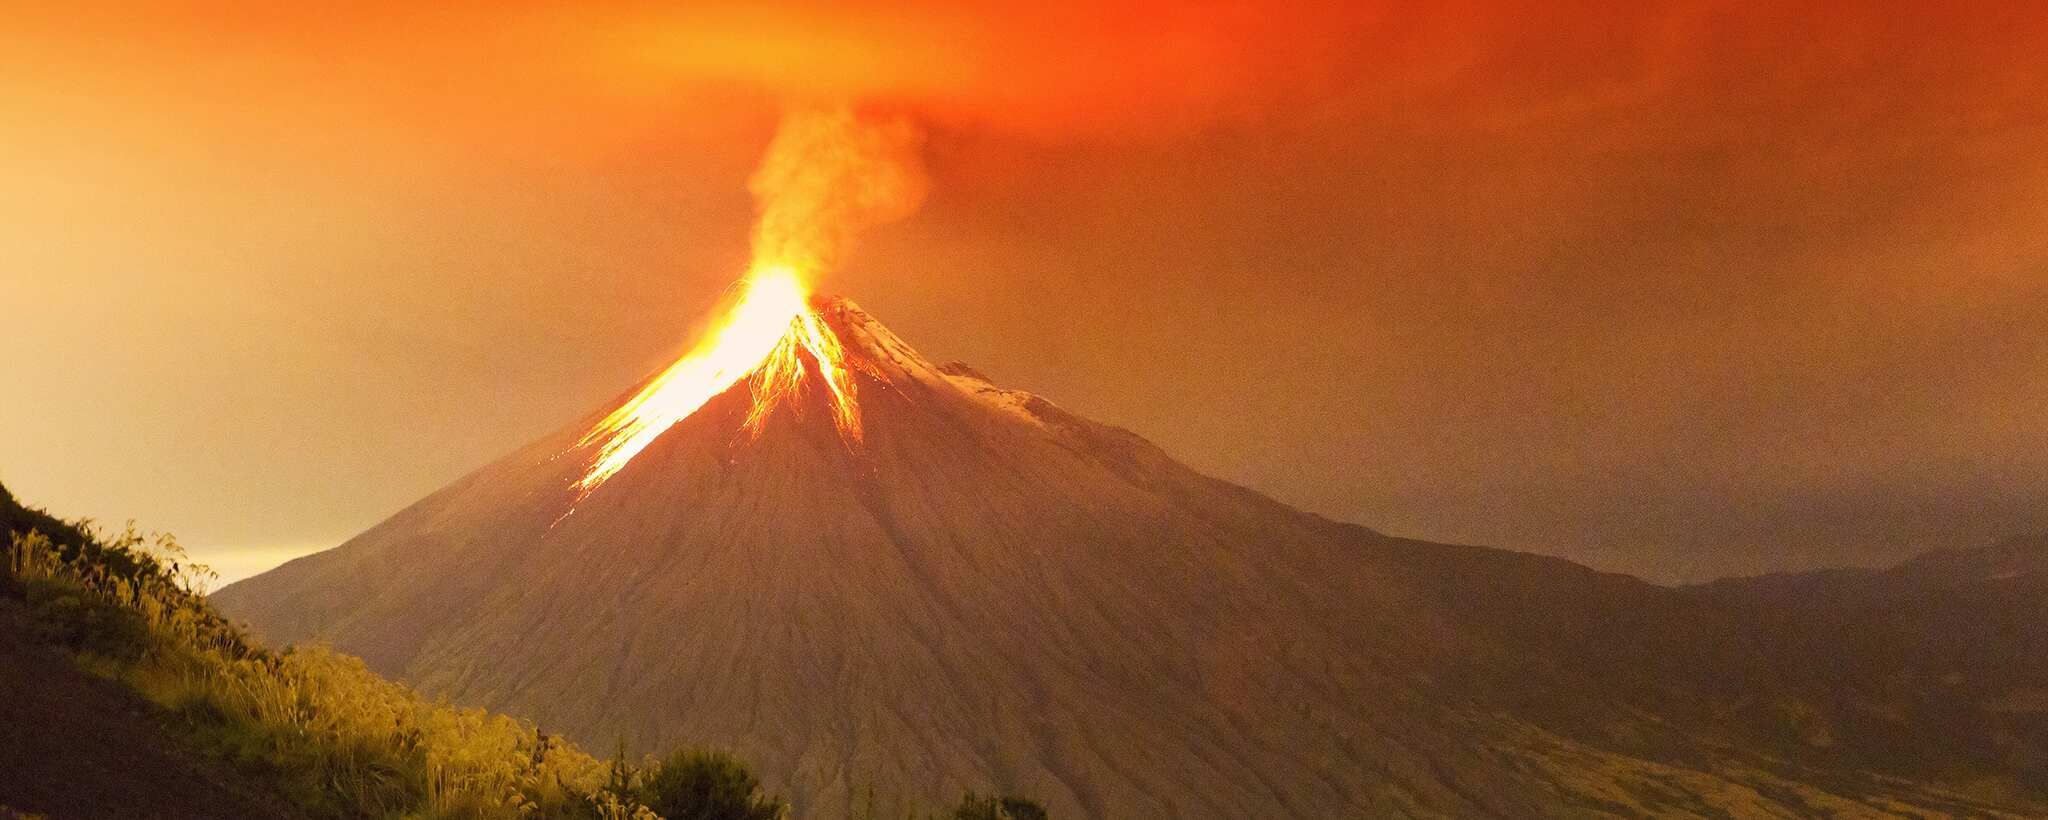 Извержение вулкана: прогнозирование извержения супервулкана